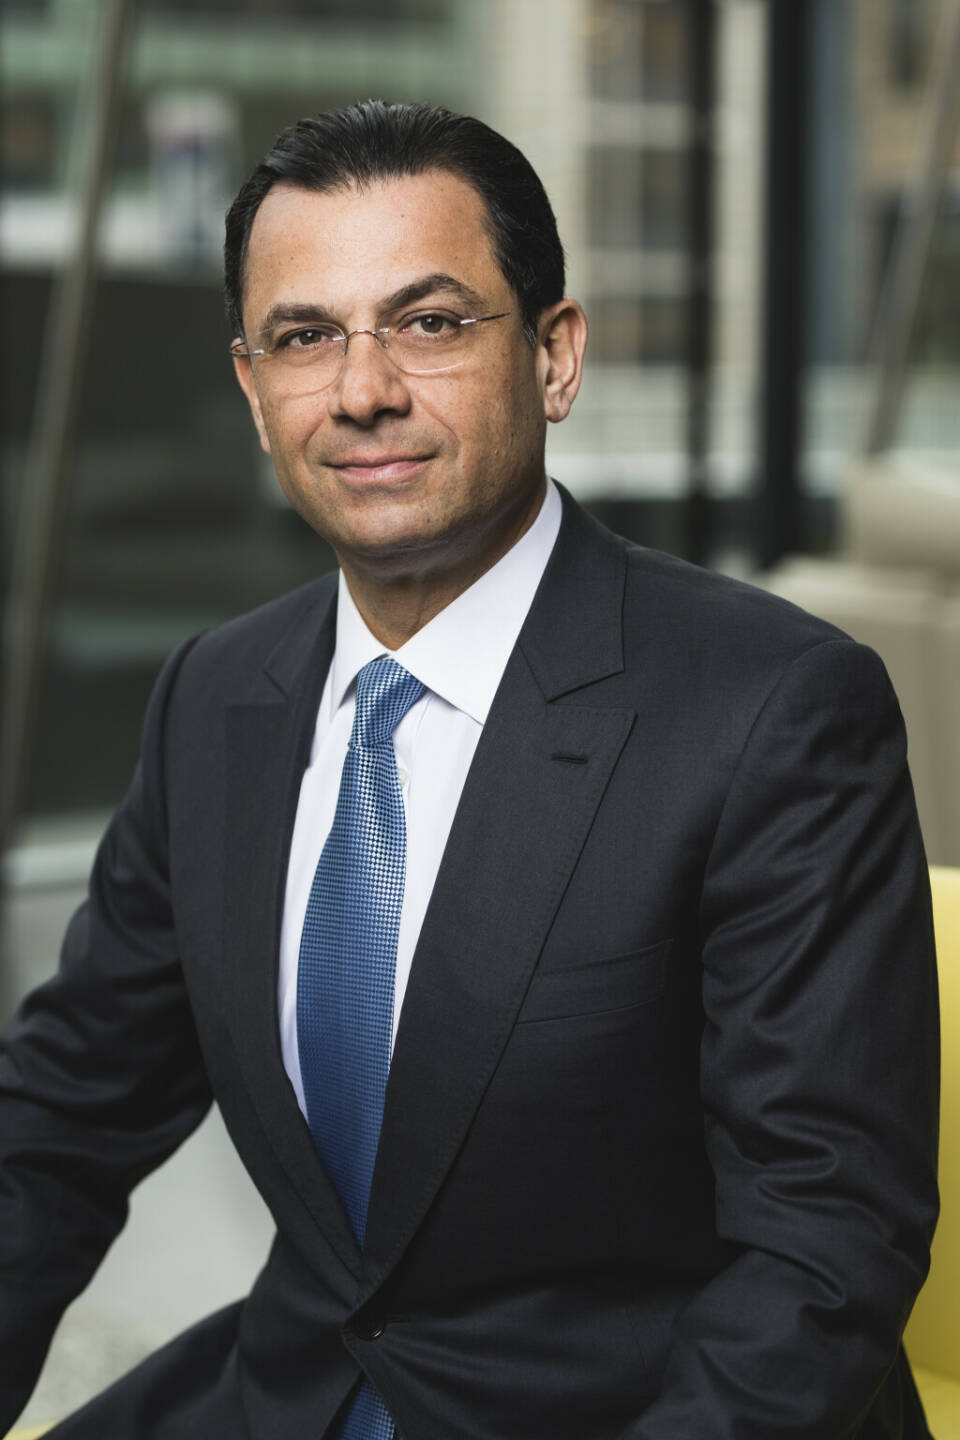 Naïm Abou-Jaoudé, CEO von Candriam und Vorstandsvorsitzender von New York Life Investment Management International; Credit: Candriam